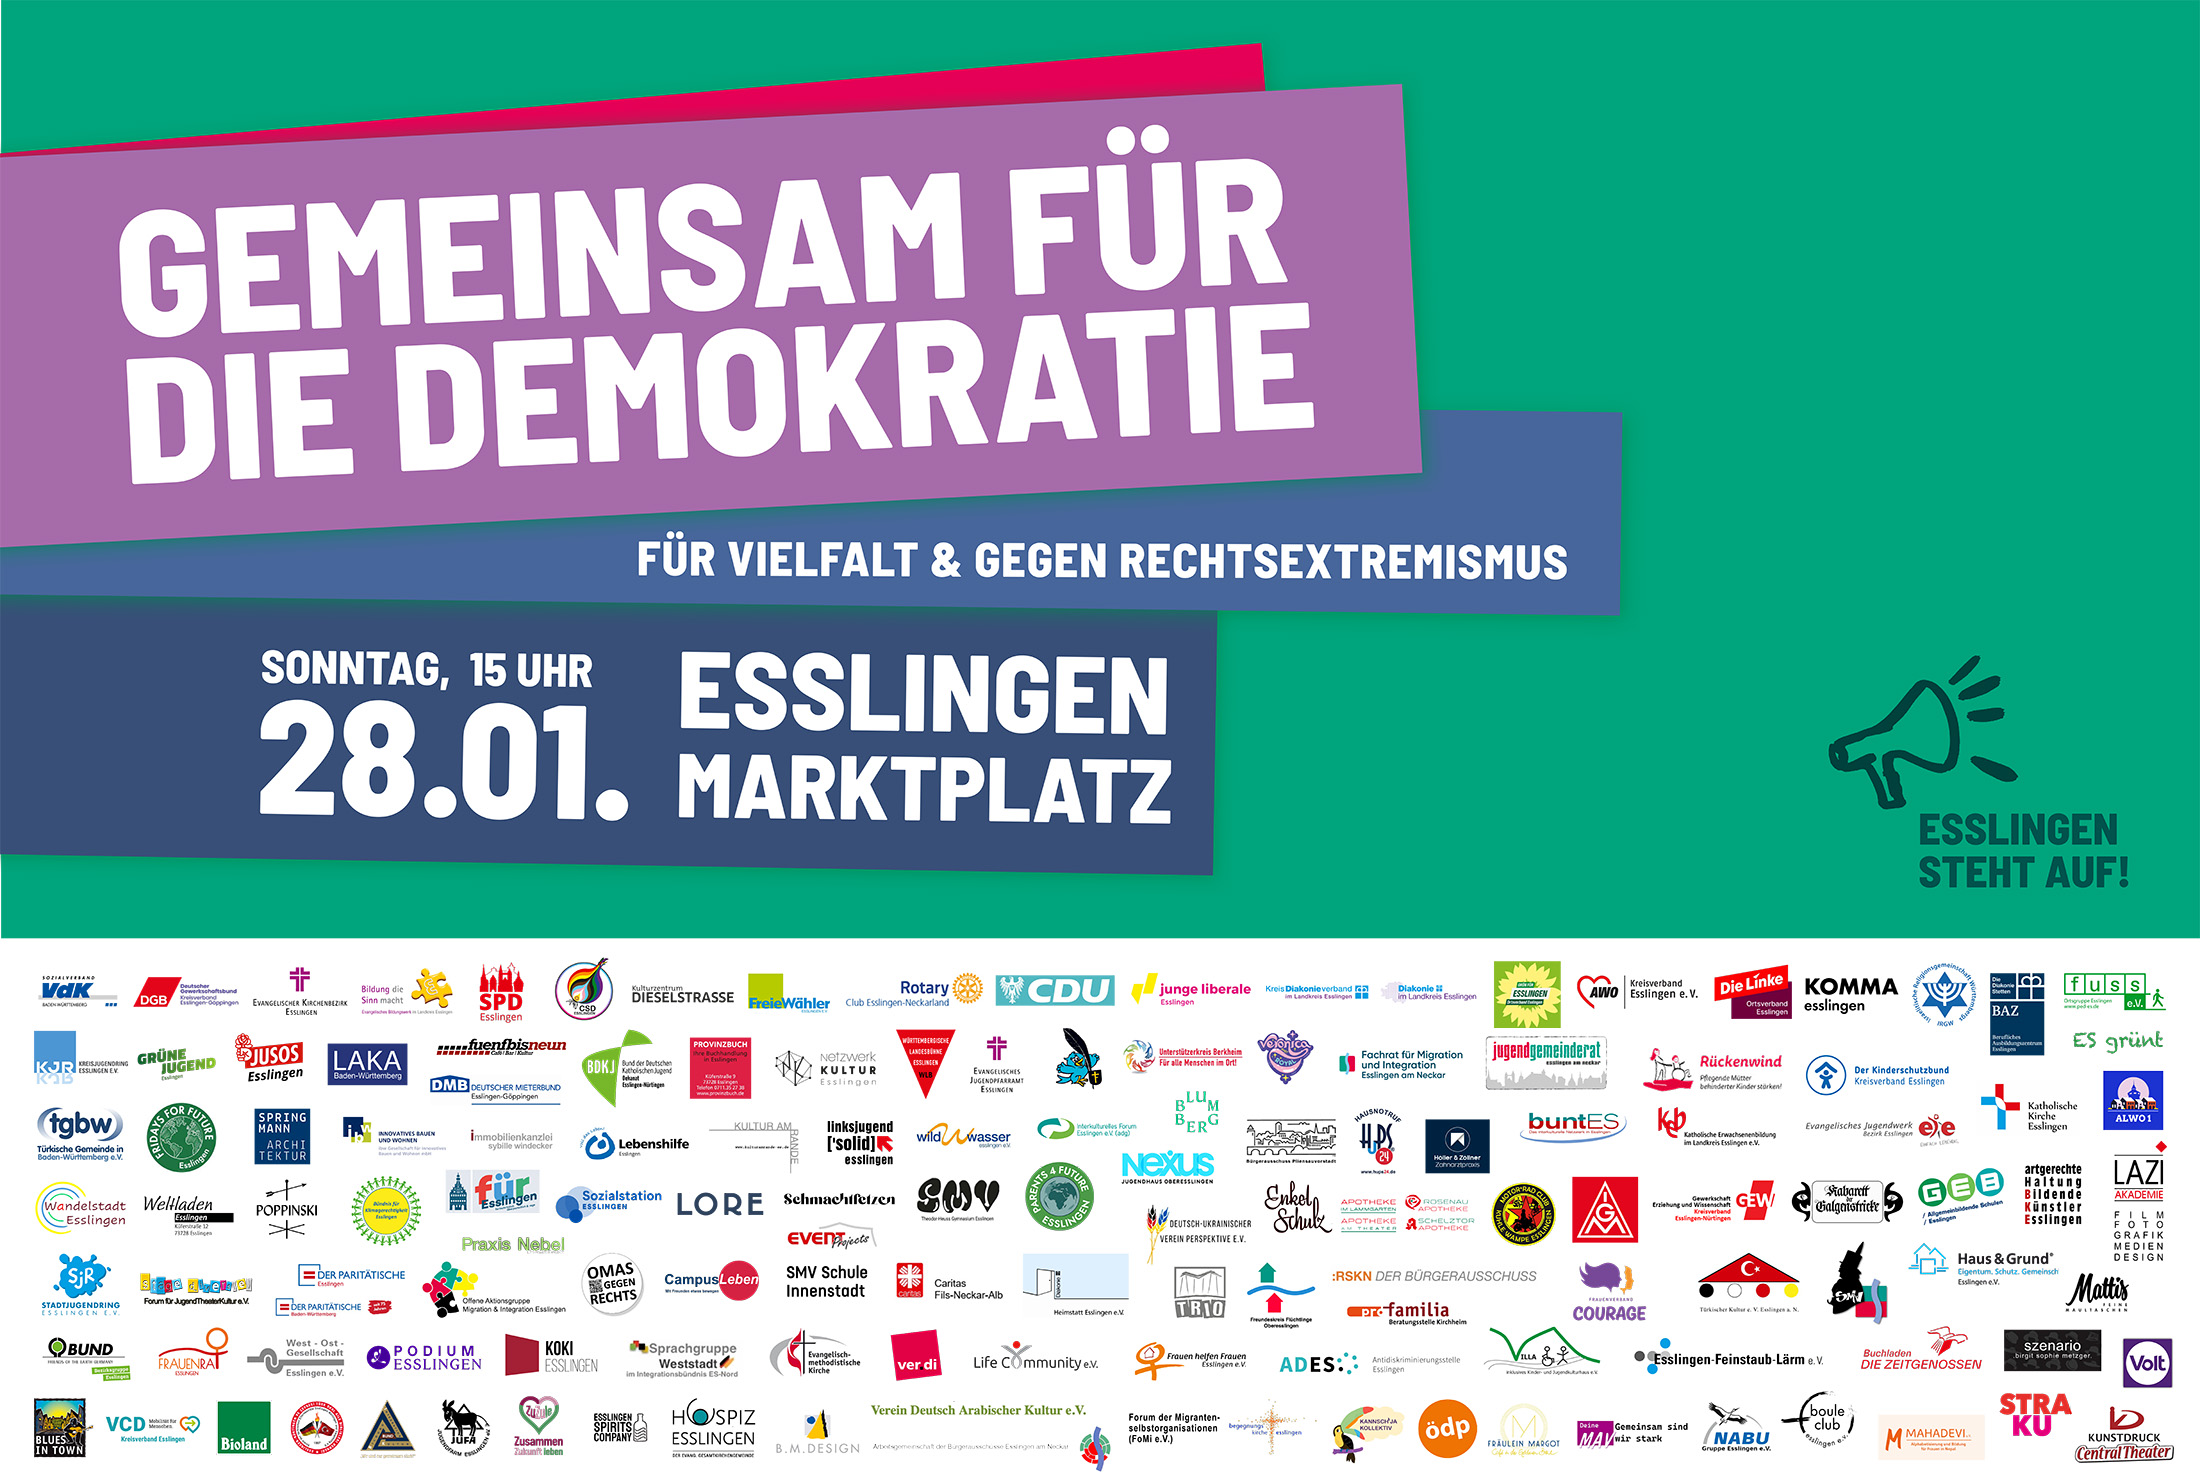 gemeinsam-f-d-demokratie_28.01_esslingen_quer-0